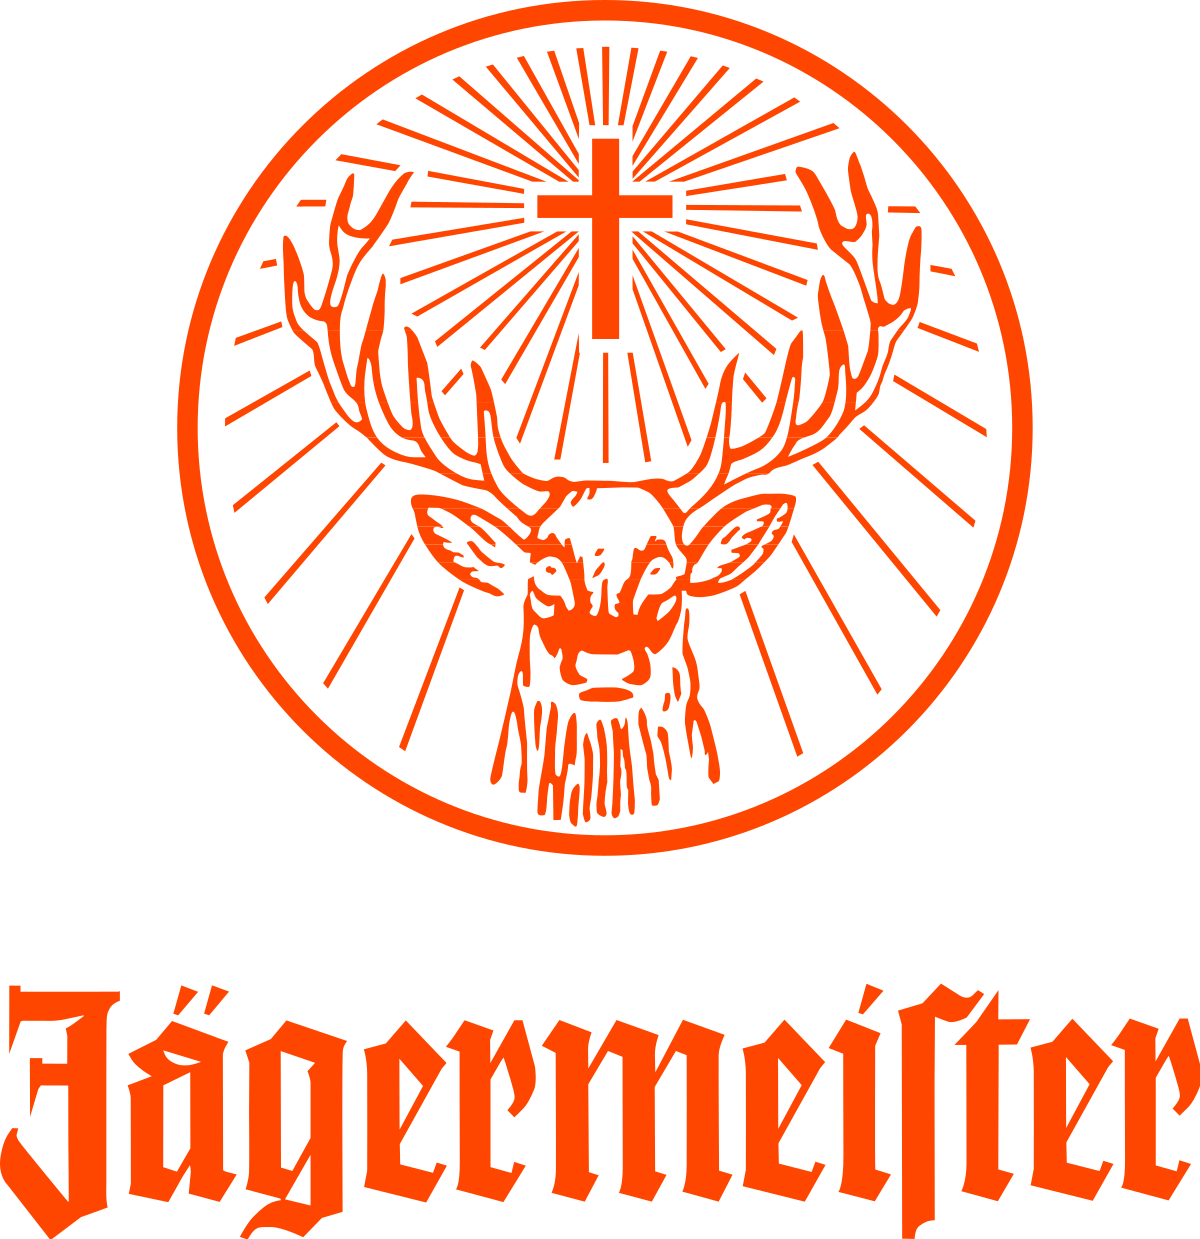 piston order Take-up Jägermeister - Wikipedia